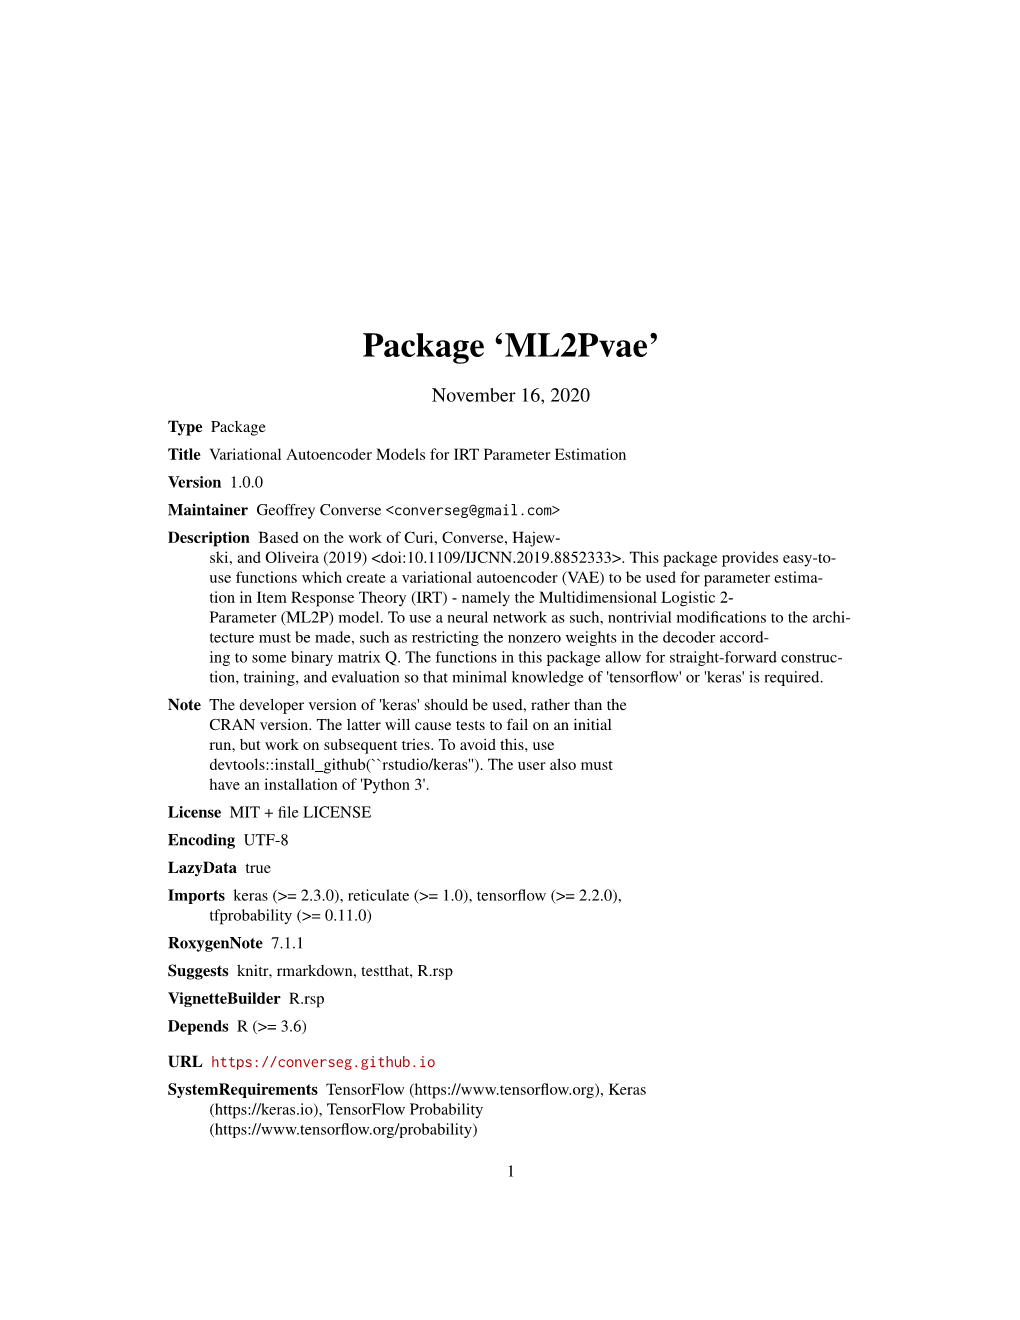 Package 'Ml2pvae'